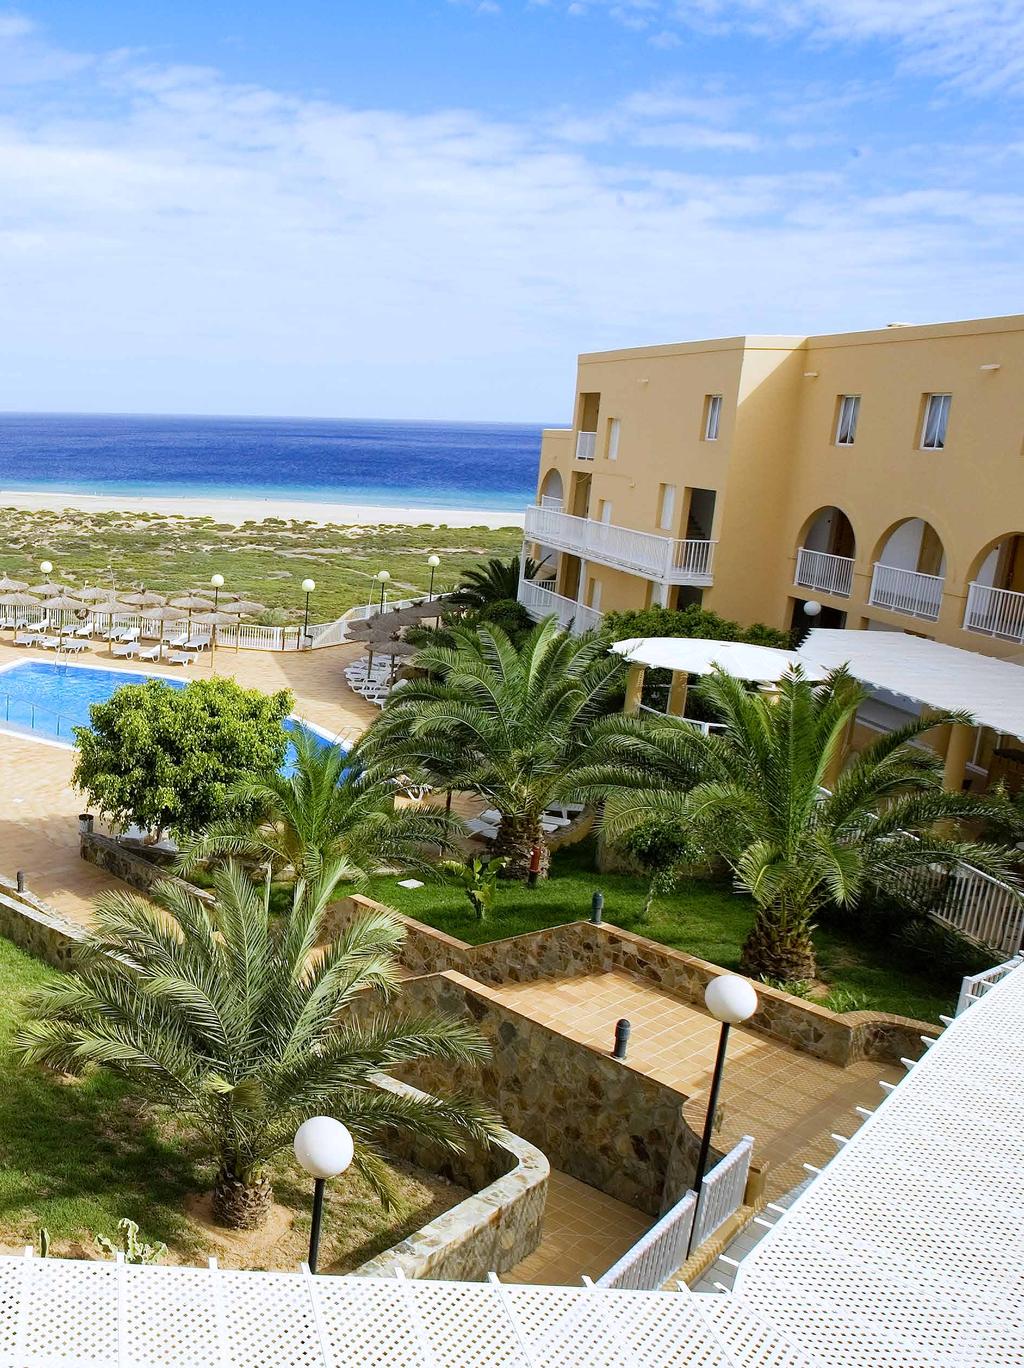 Eden Village Maxorata Resort Playa de Jandia, Fuerteventura Situato nella zona più selvaggia